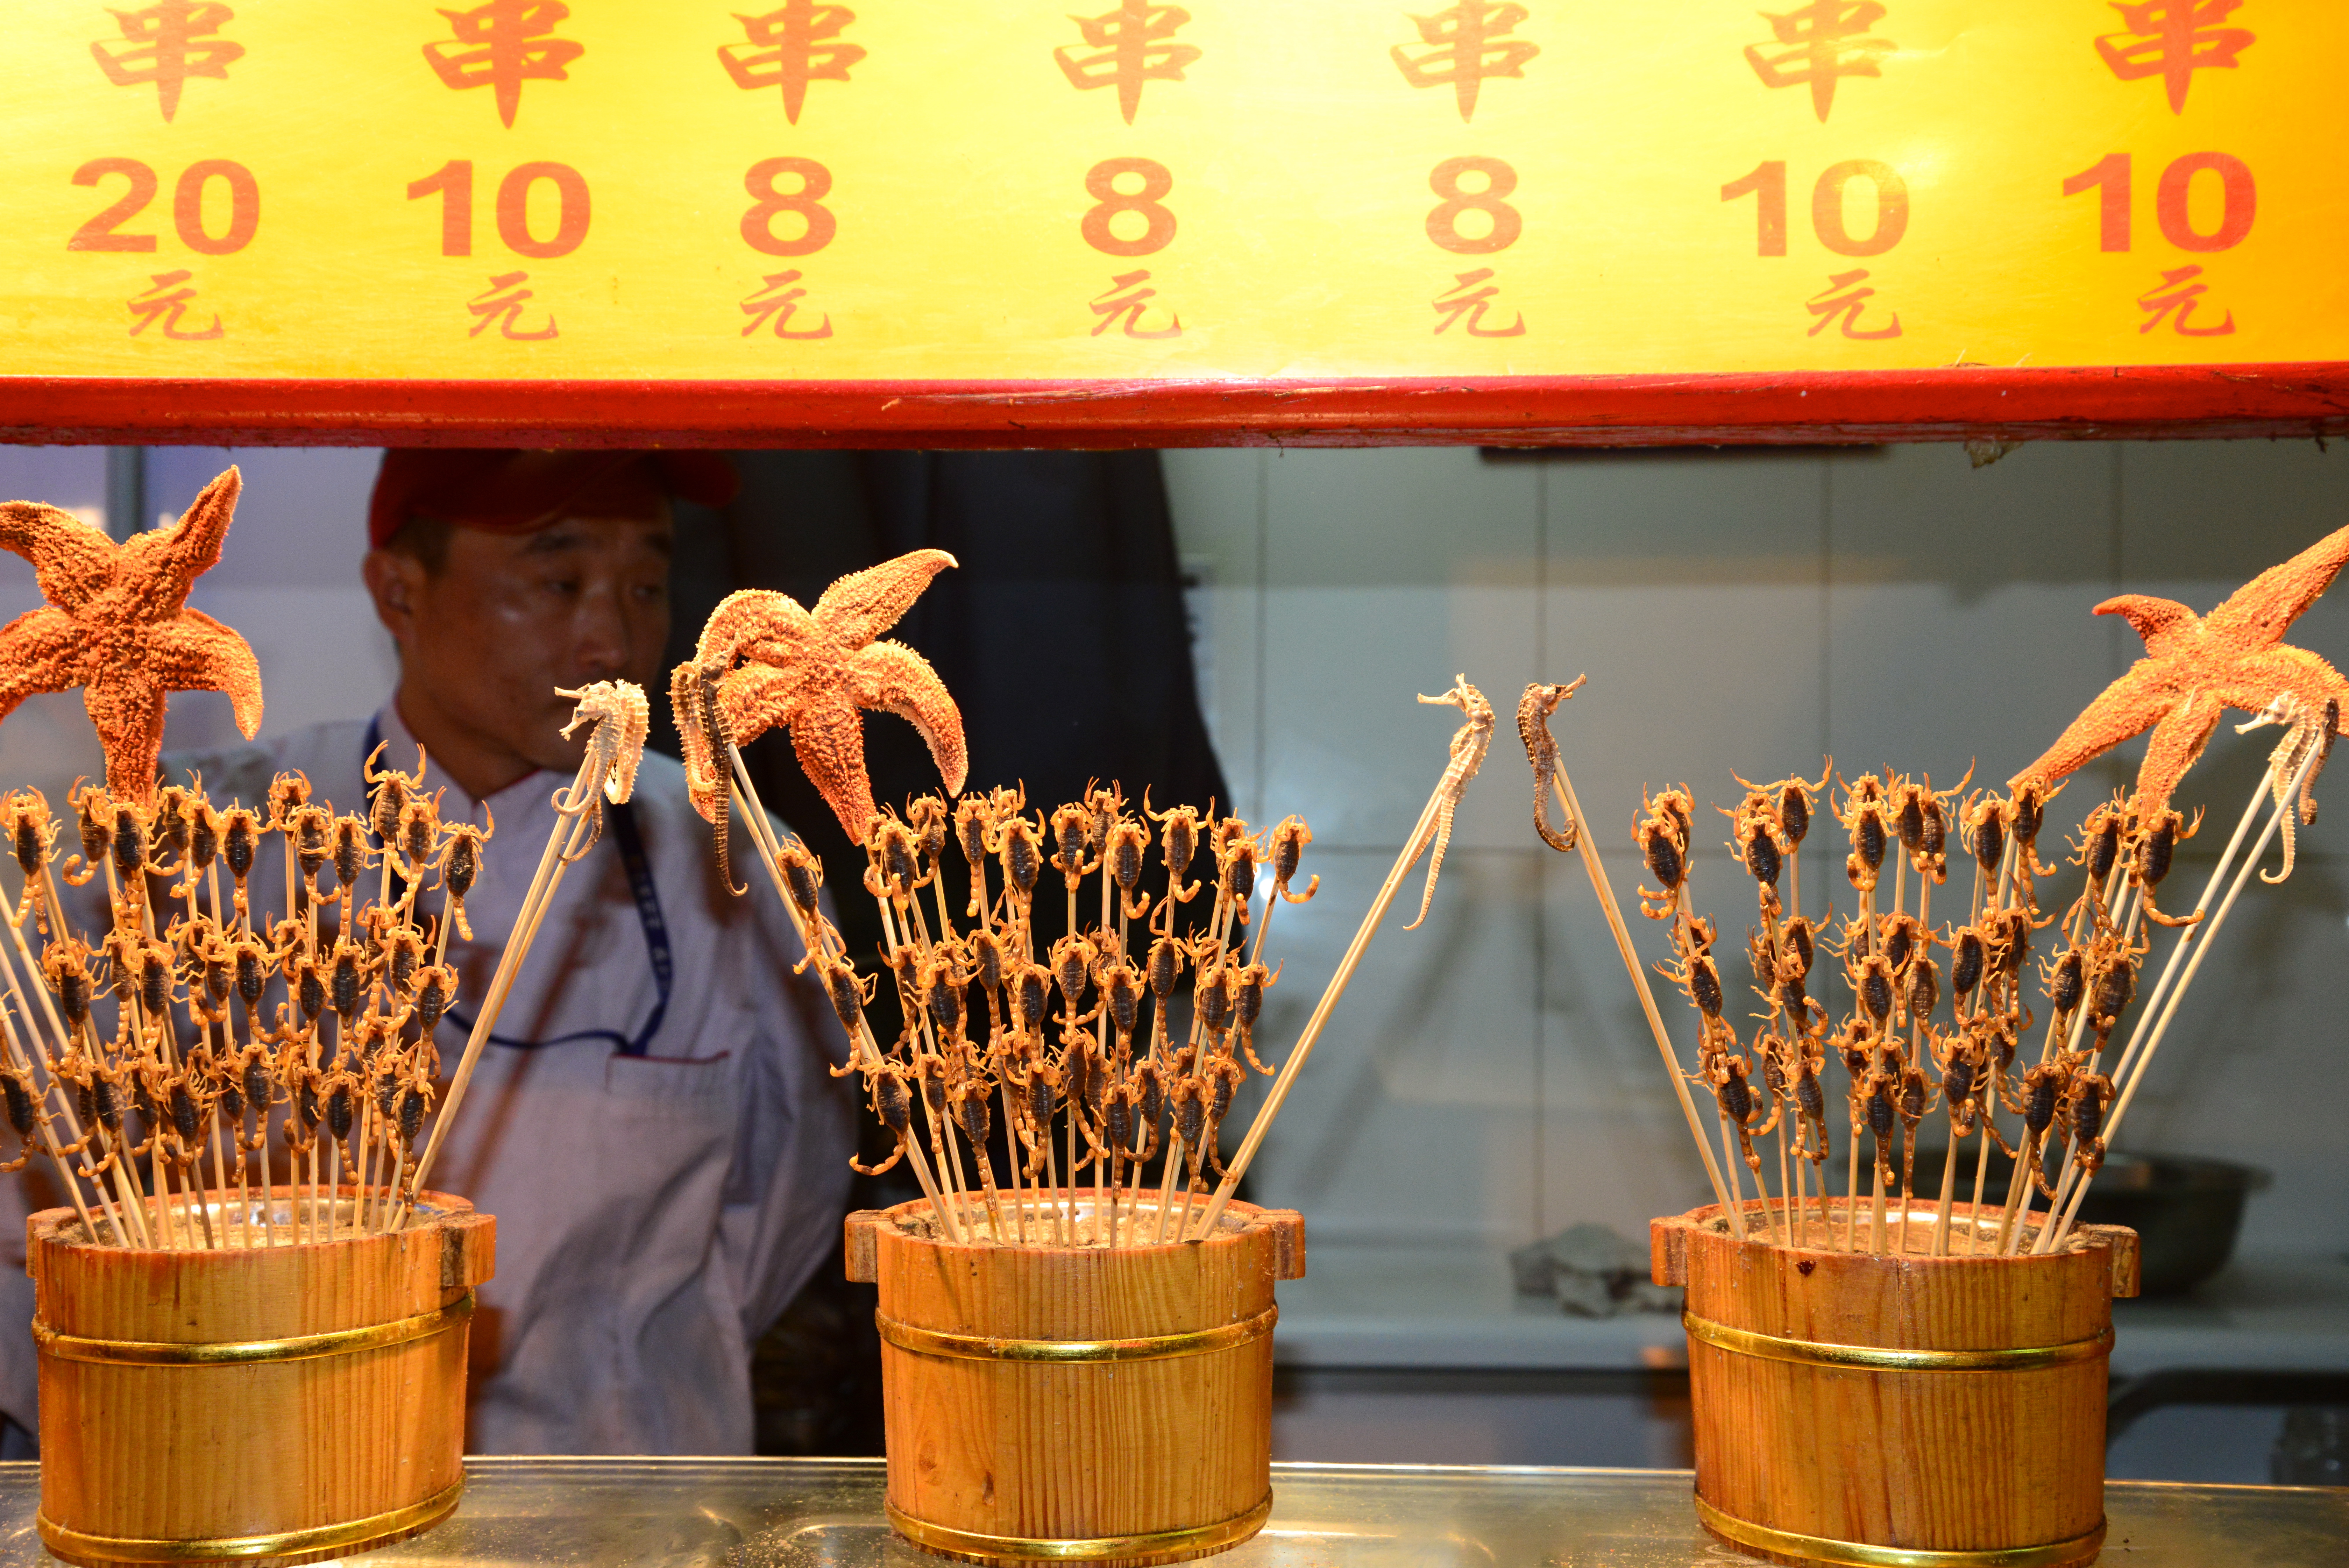 Escorpiões, Cavalos Marinhos, e Estrelas do mar, na Rua de Comidas Exóticas de Pequim.